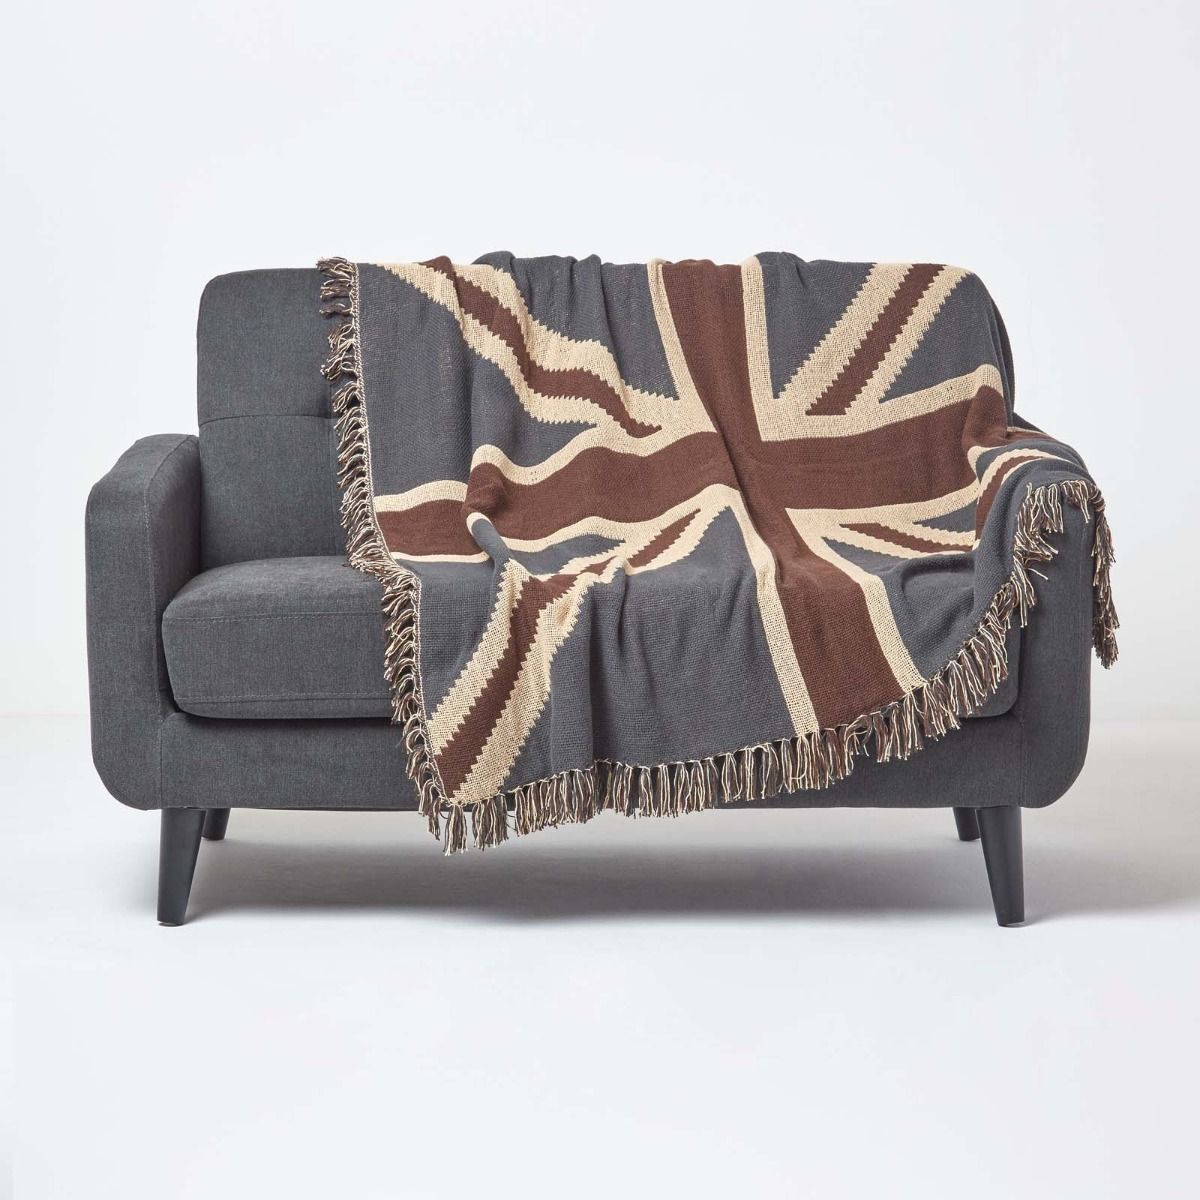 Reisedecke Sherpa-Sofa-Überwurf Catalonia Classy Decke mit Union Jack-Flagge warm Fleece Plüsch gemütlich britische Flagge für Couch weich Bettüberwurf 180 x 130 cm Grau